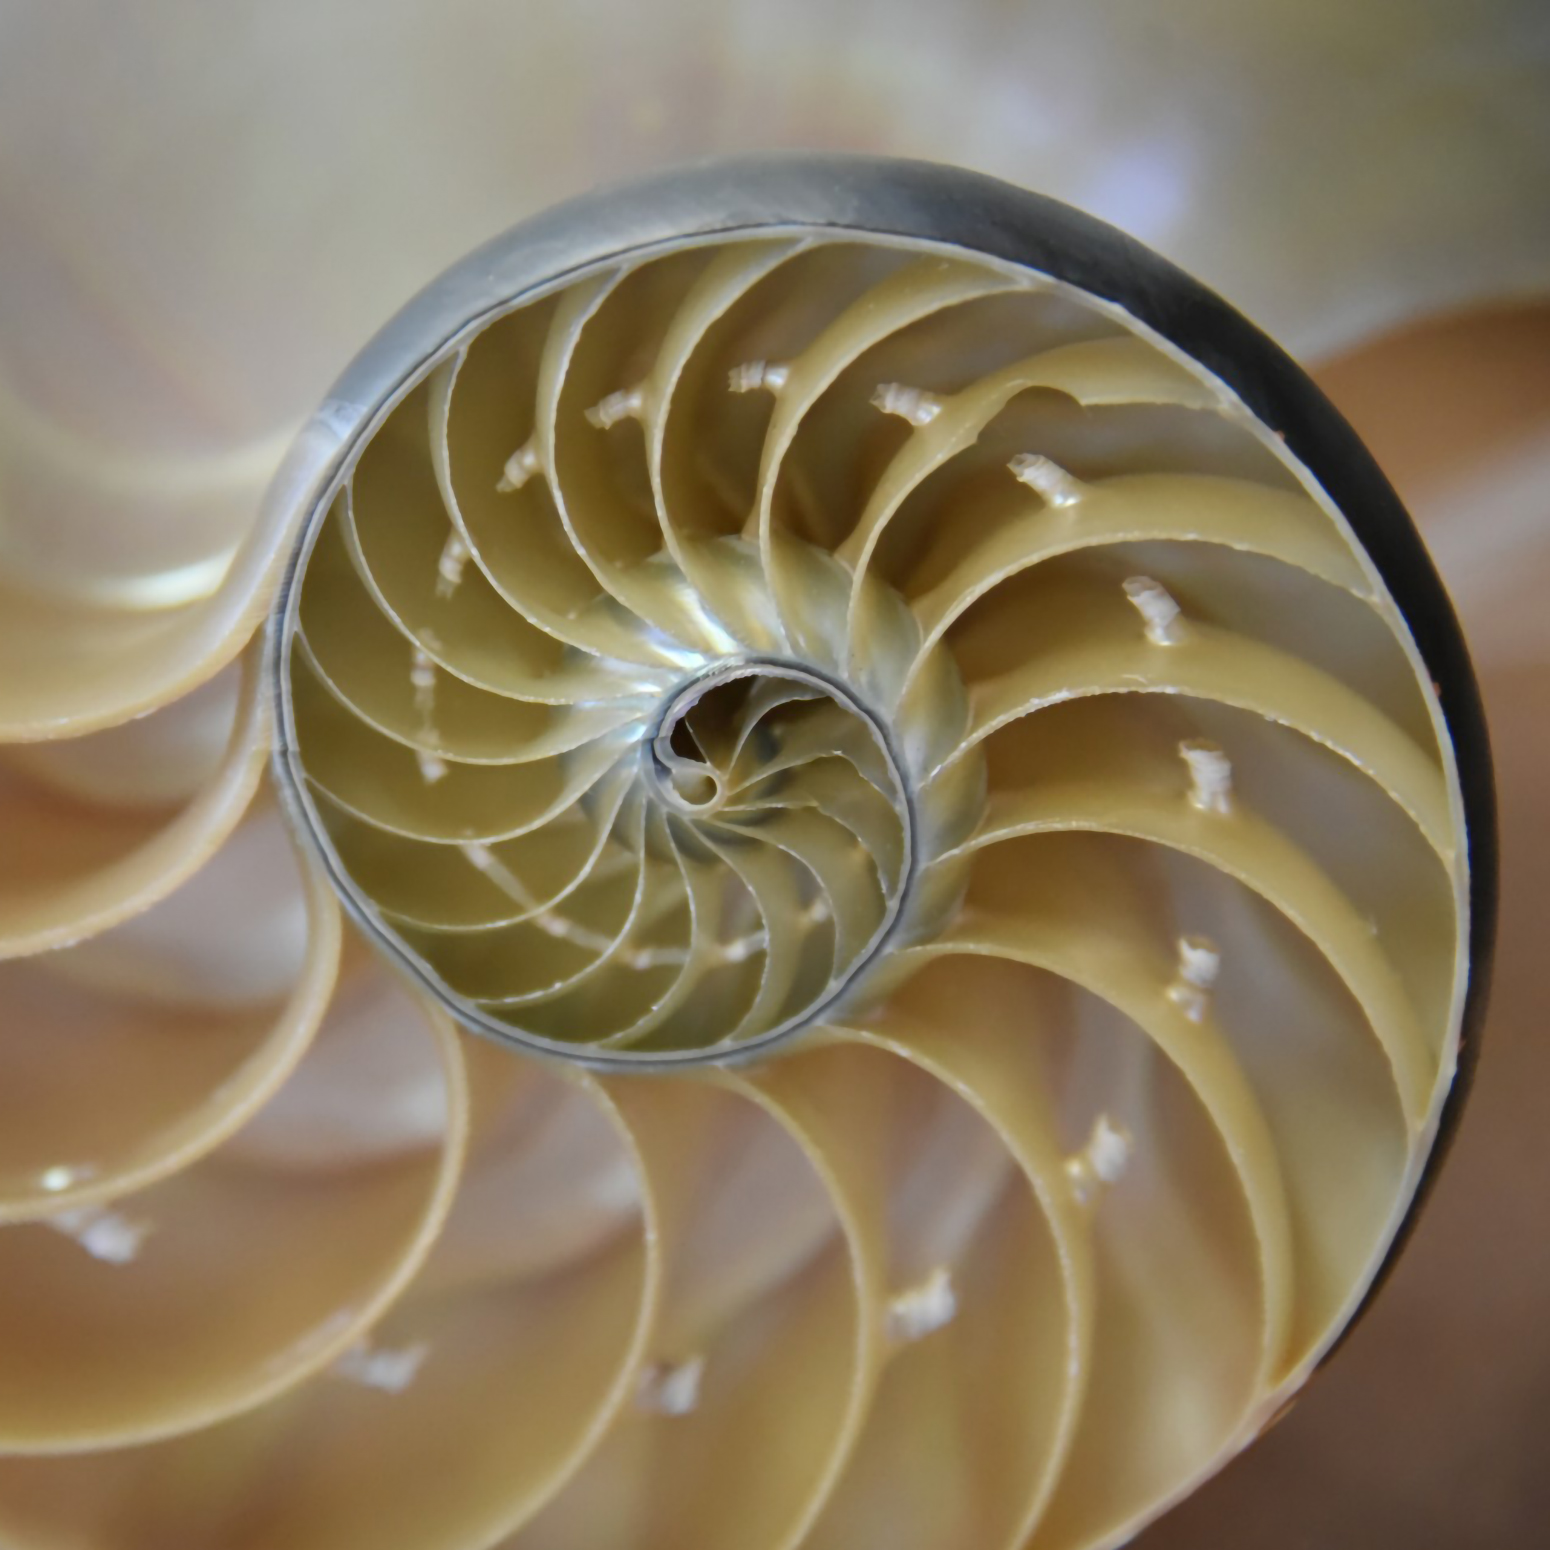 A spiral shell